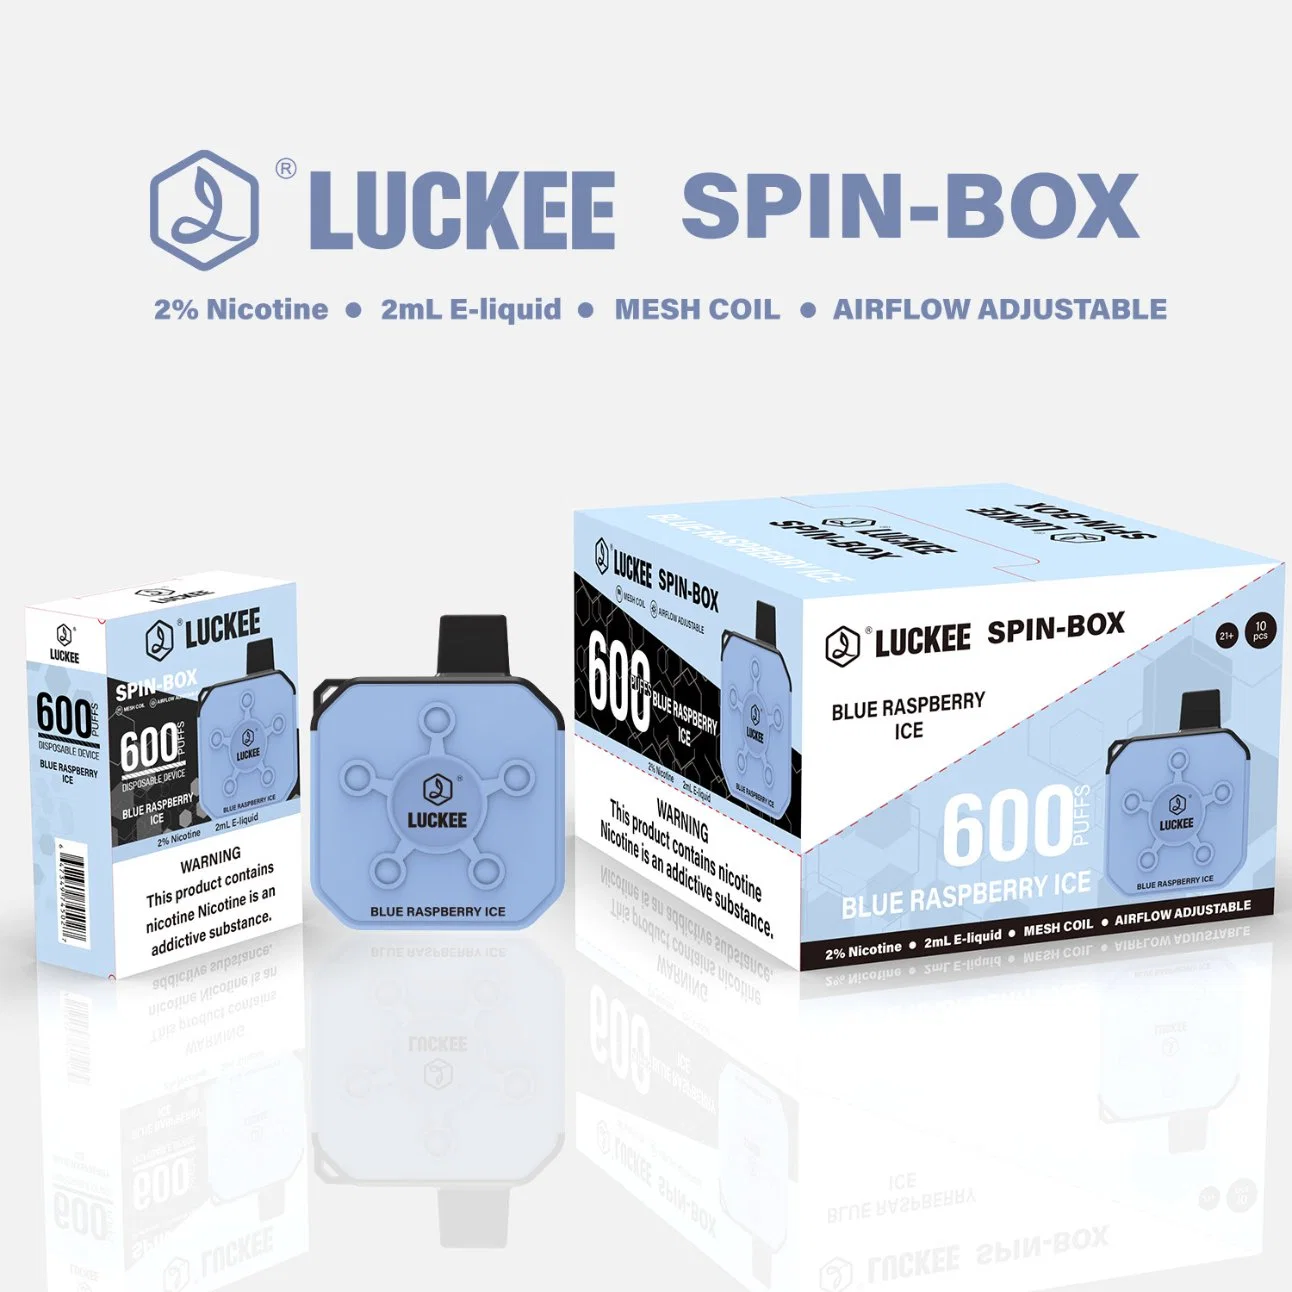 Luckee Spin-Box 600 Puffs 2ml Mini Box E-Cigarette Macaron Color